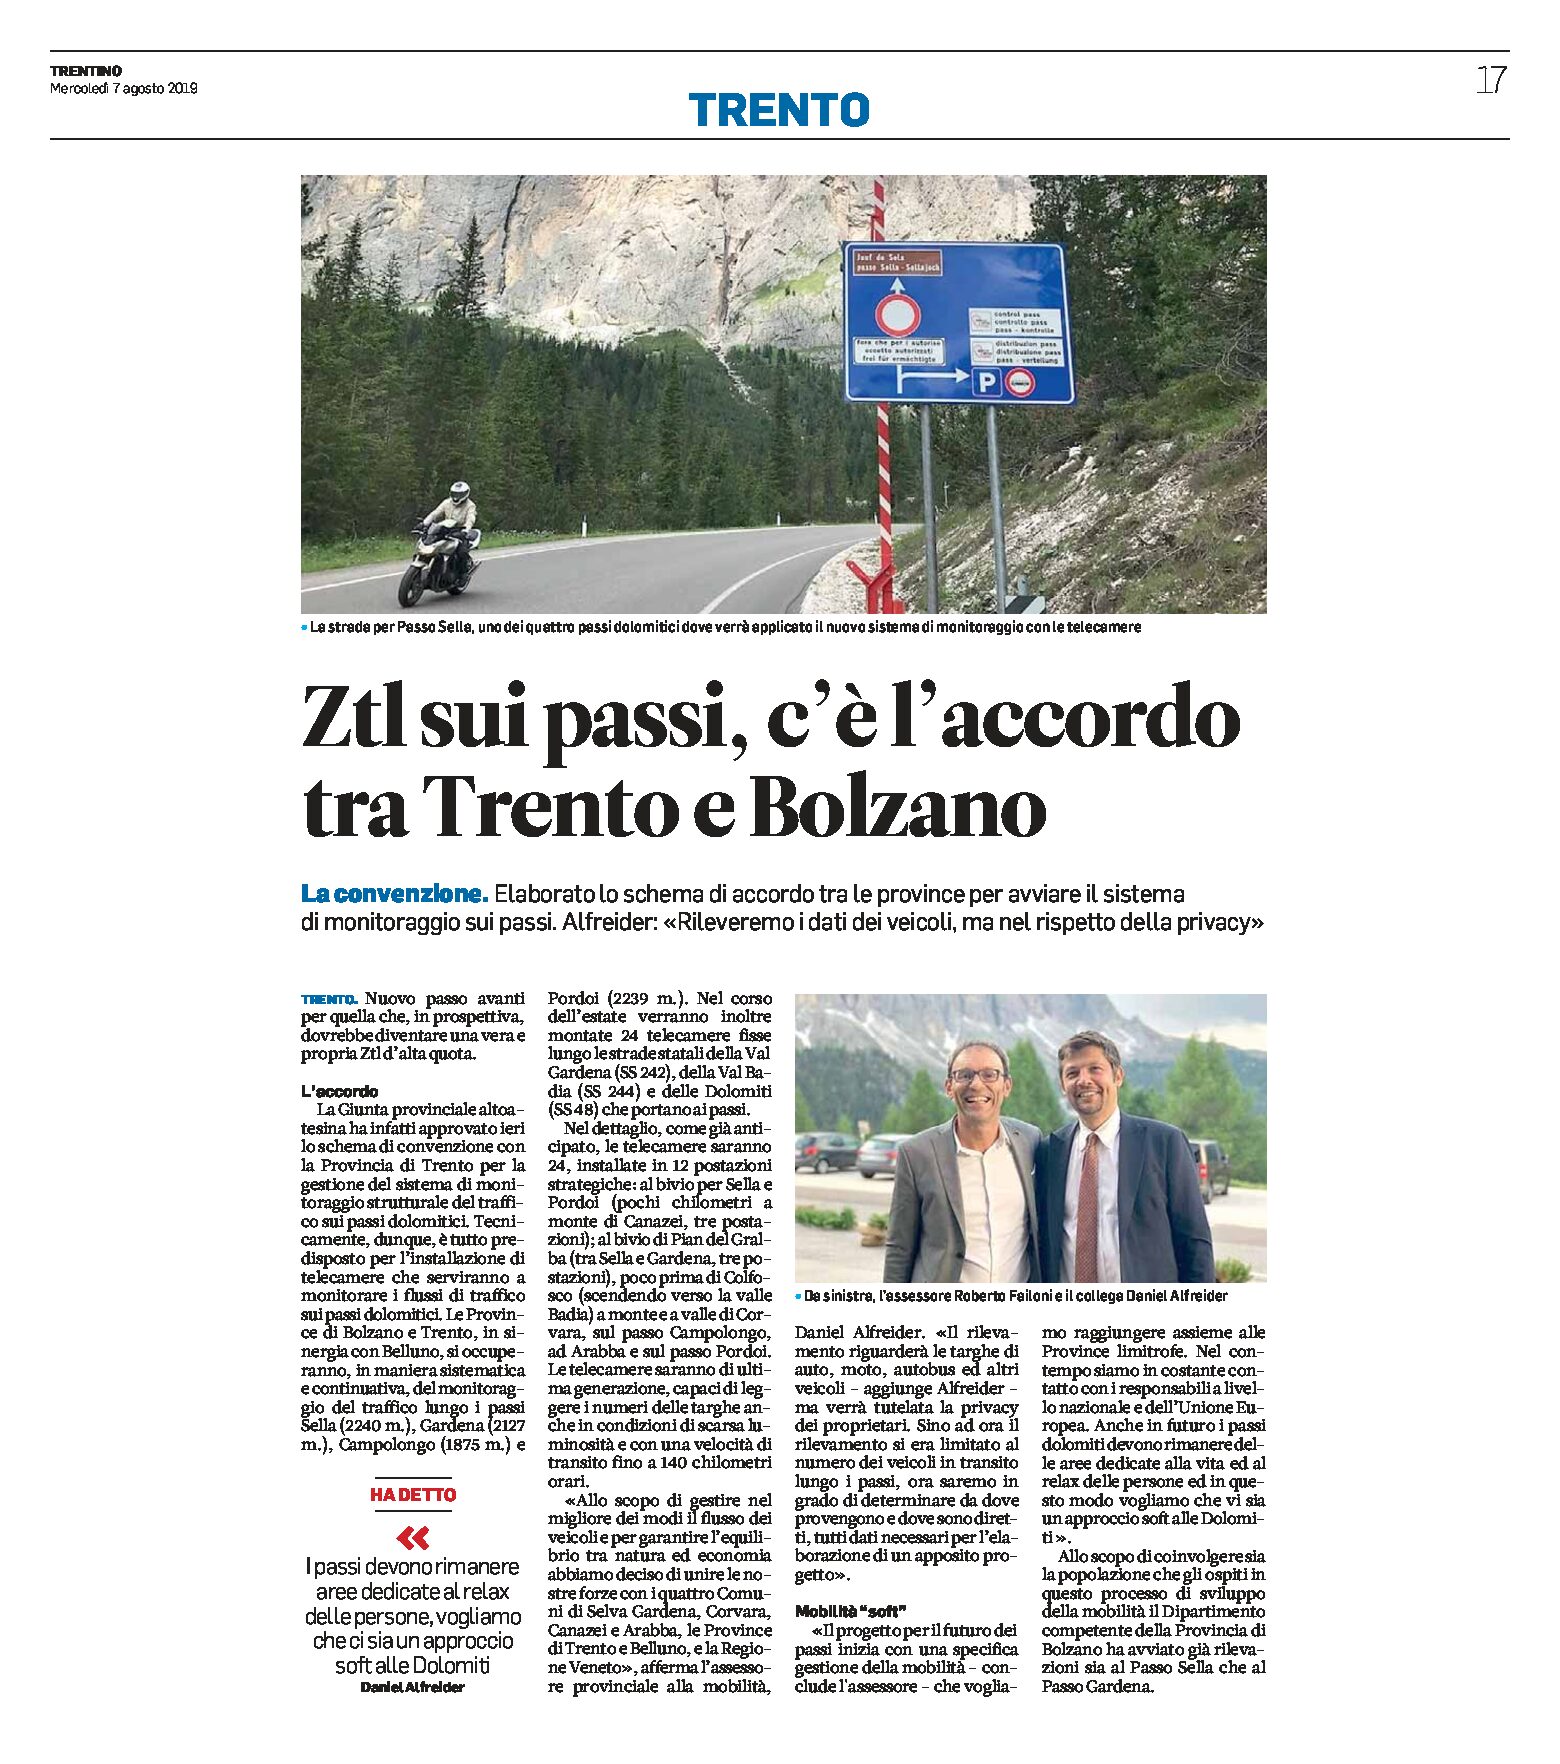 Ztl sui passi: c’è l’accordo tra Trento e Bolzano